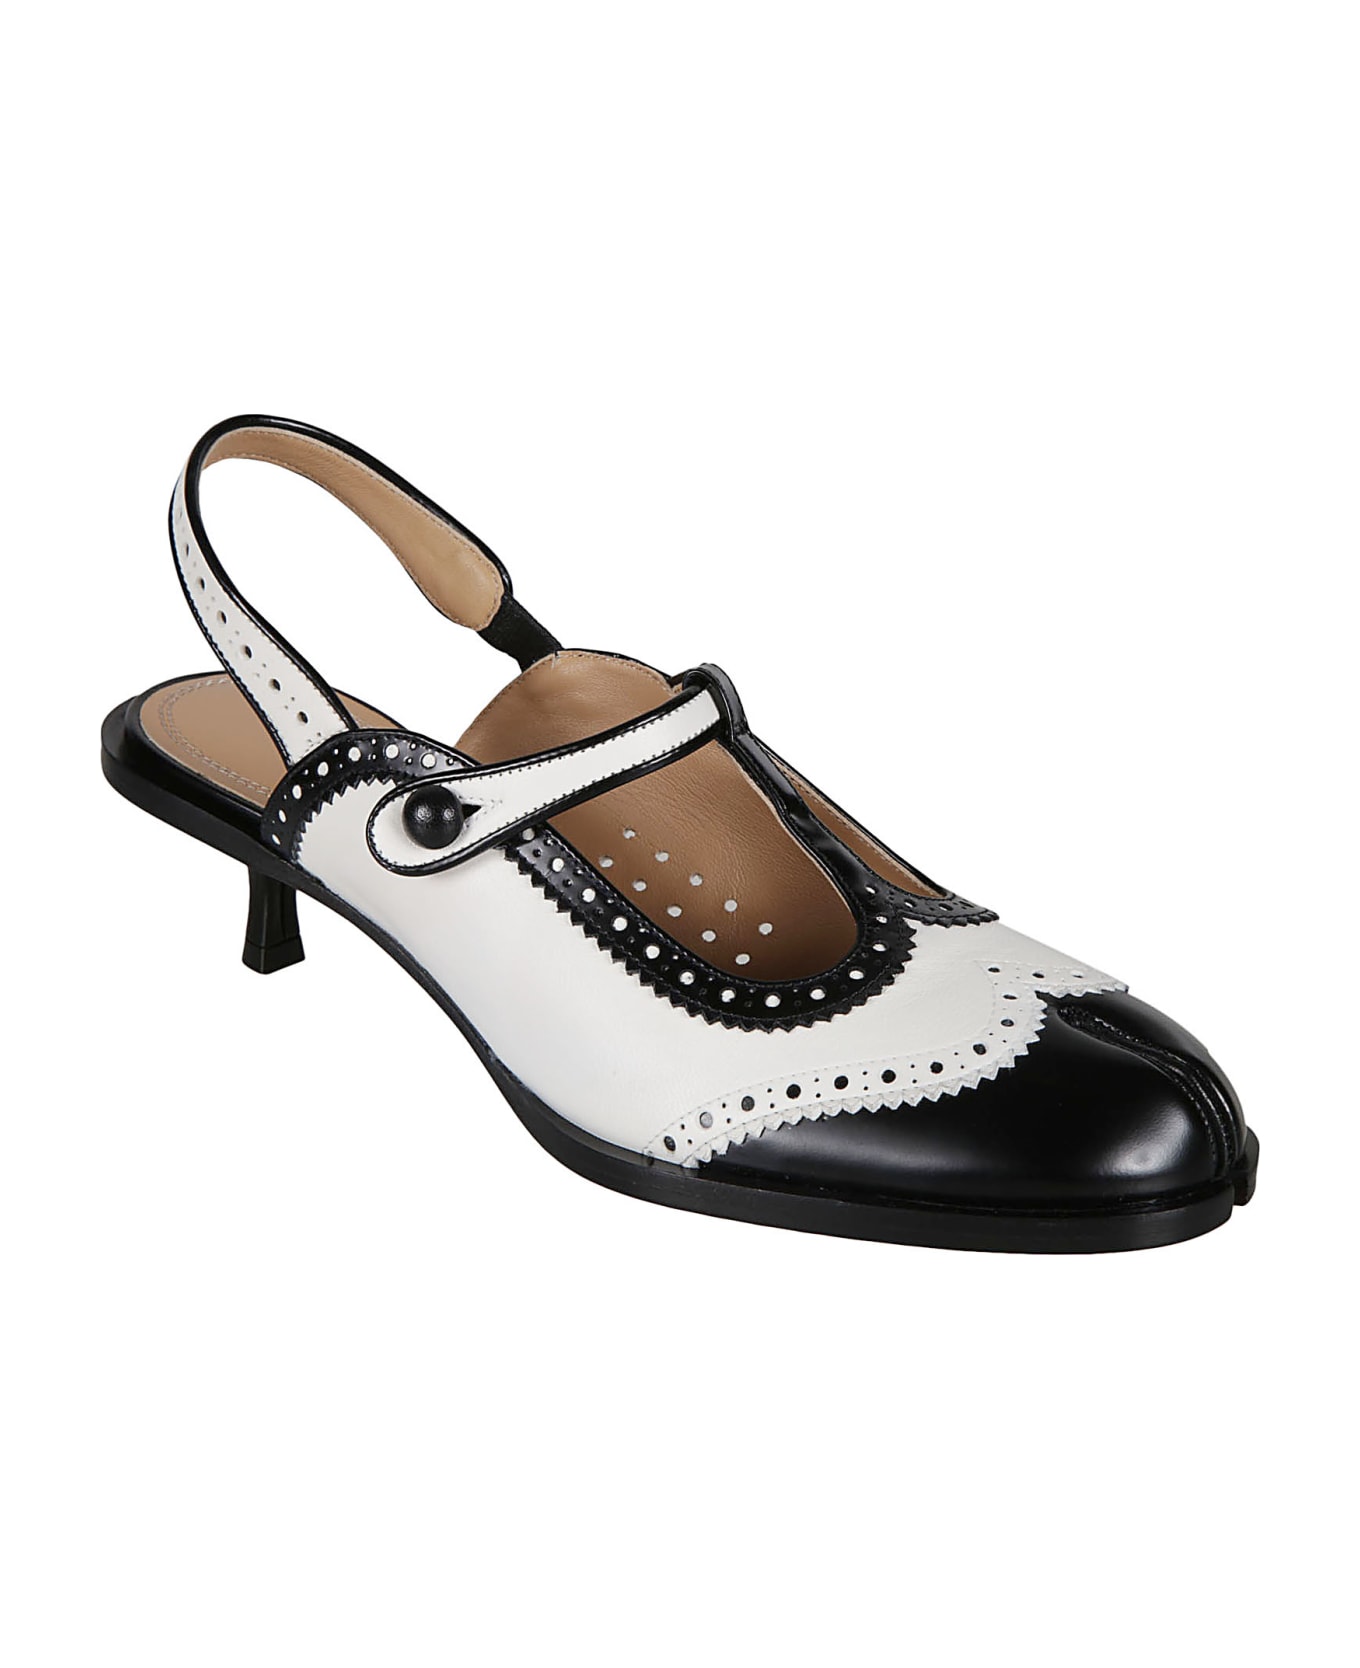 Maison Margiela Bacl Strap Cleft Toe Sandals - white/black